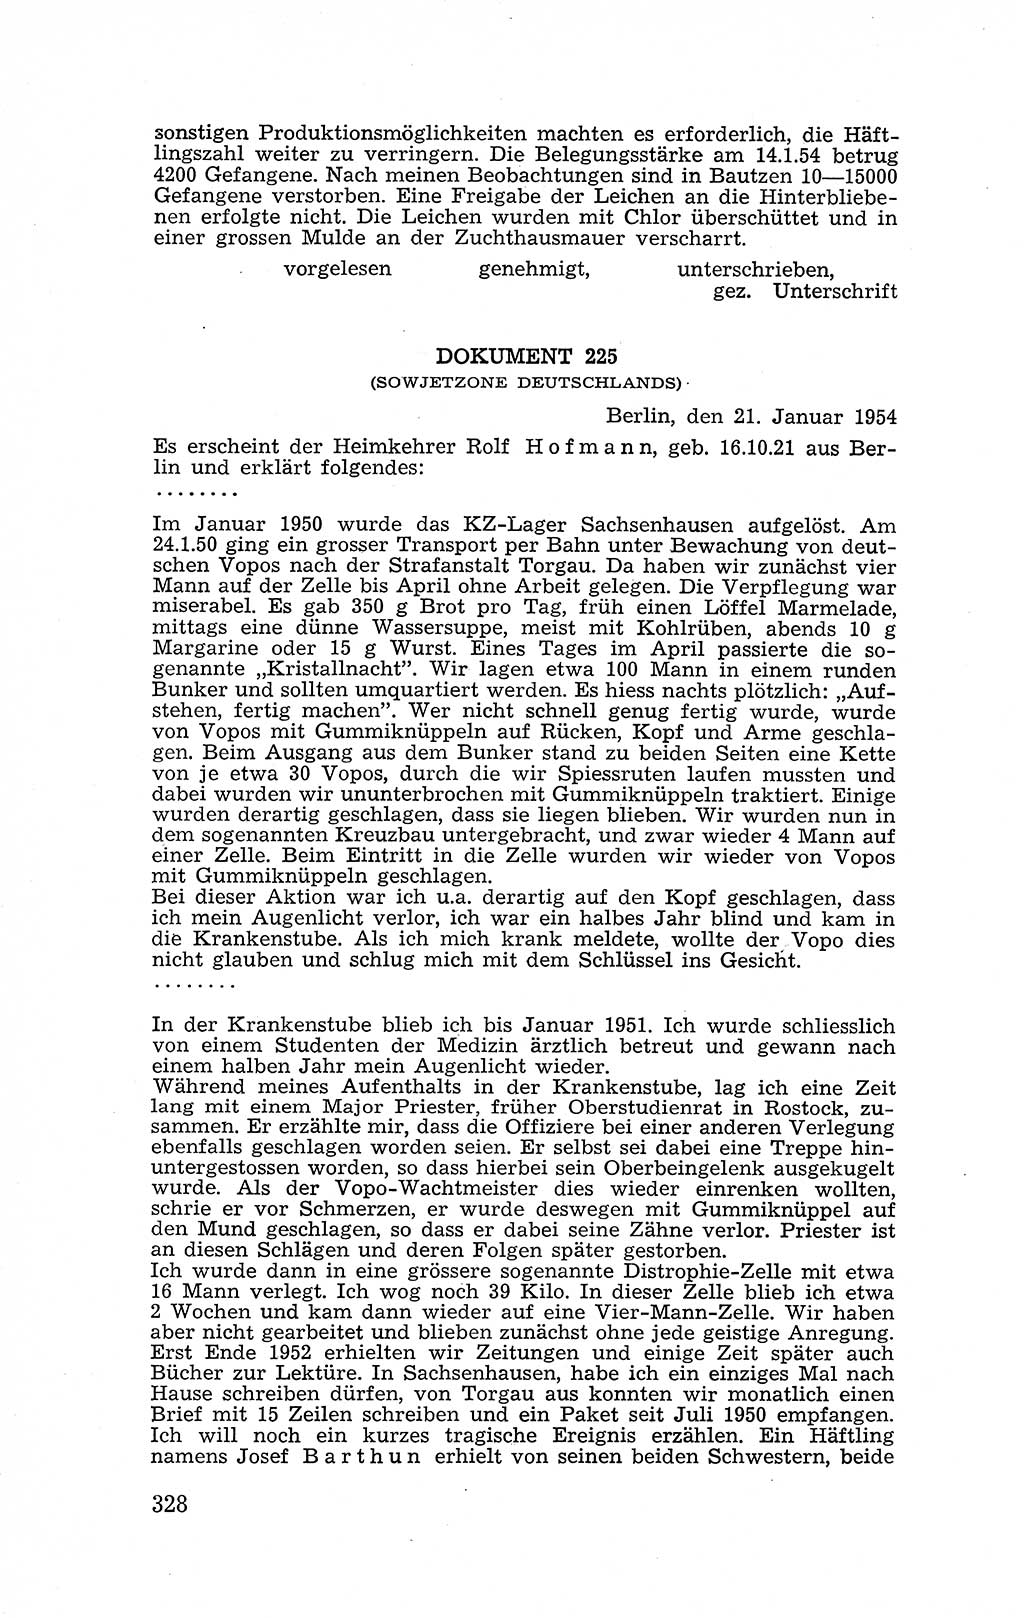 Recht in Fesseln, Dokumente, Internationale Juristen-Kommission [Bundesrepublik Deutschland (BRD)] 1955, Seite 328 (R. Dok. IJK BRD 1955, S. 328)